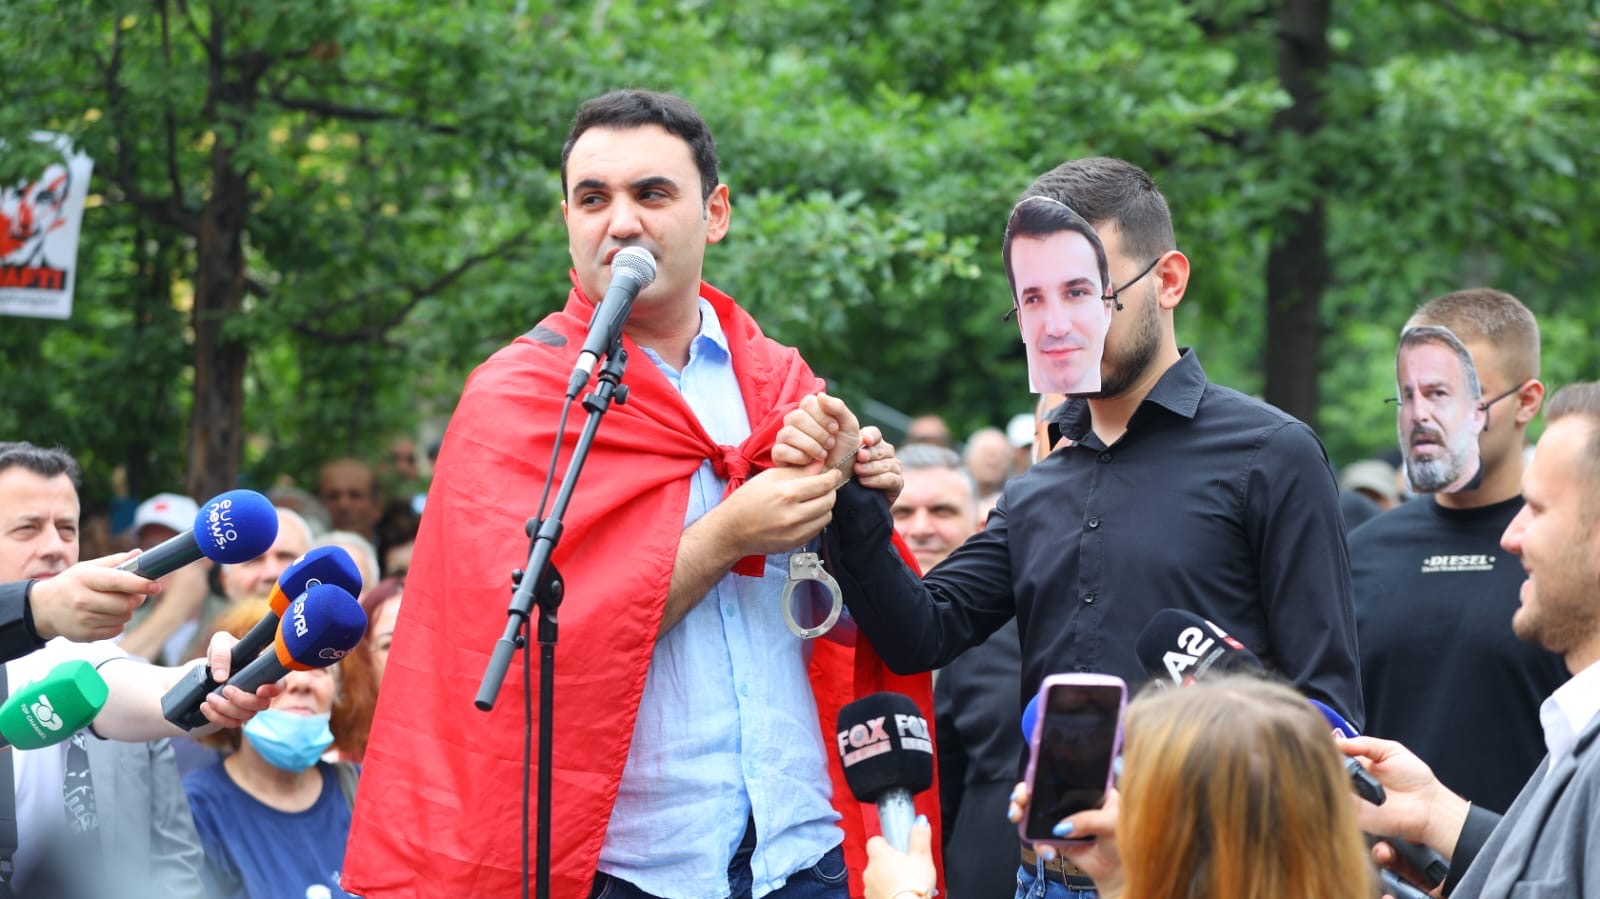 FOTOLAJM  Belind Këlliçi i vendos  prangat  Erion Veliajt  Momenti pikant gjatë protestës 